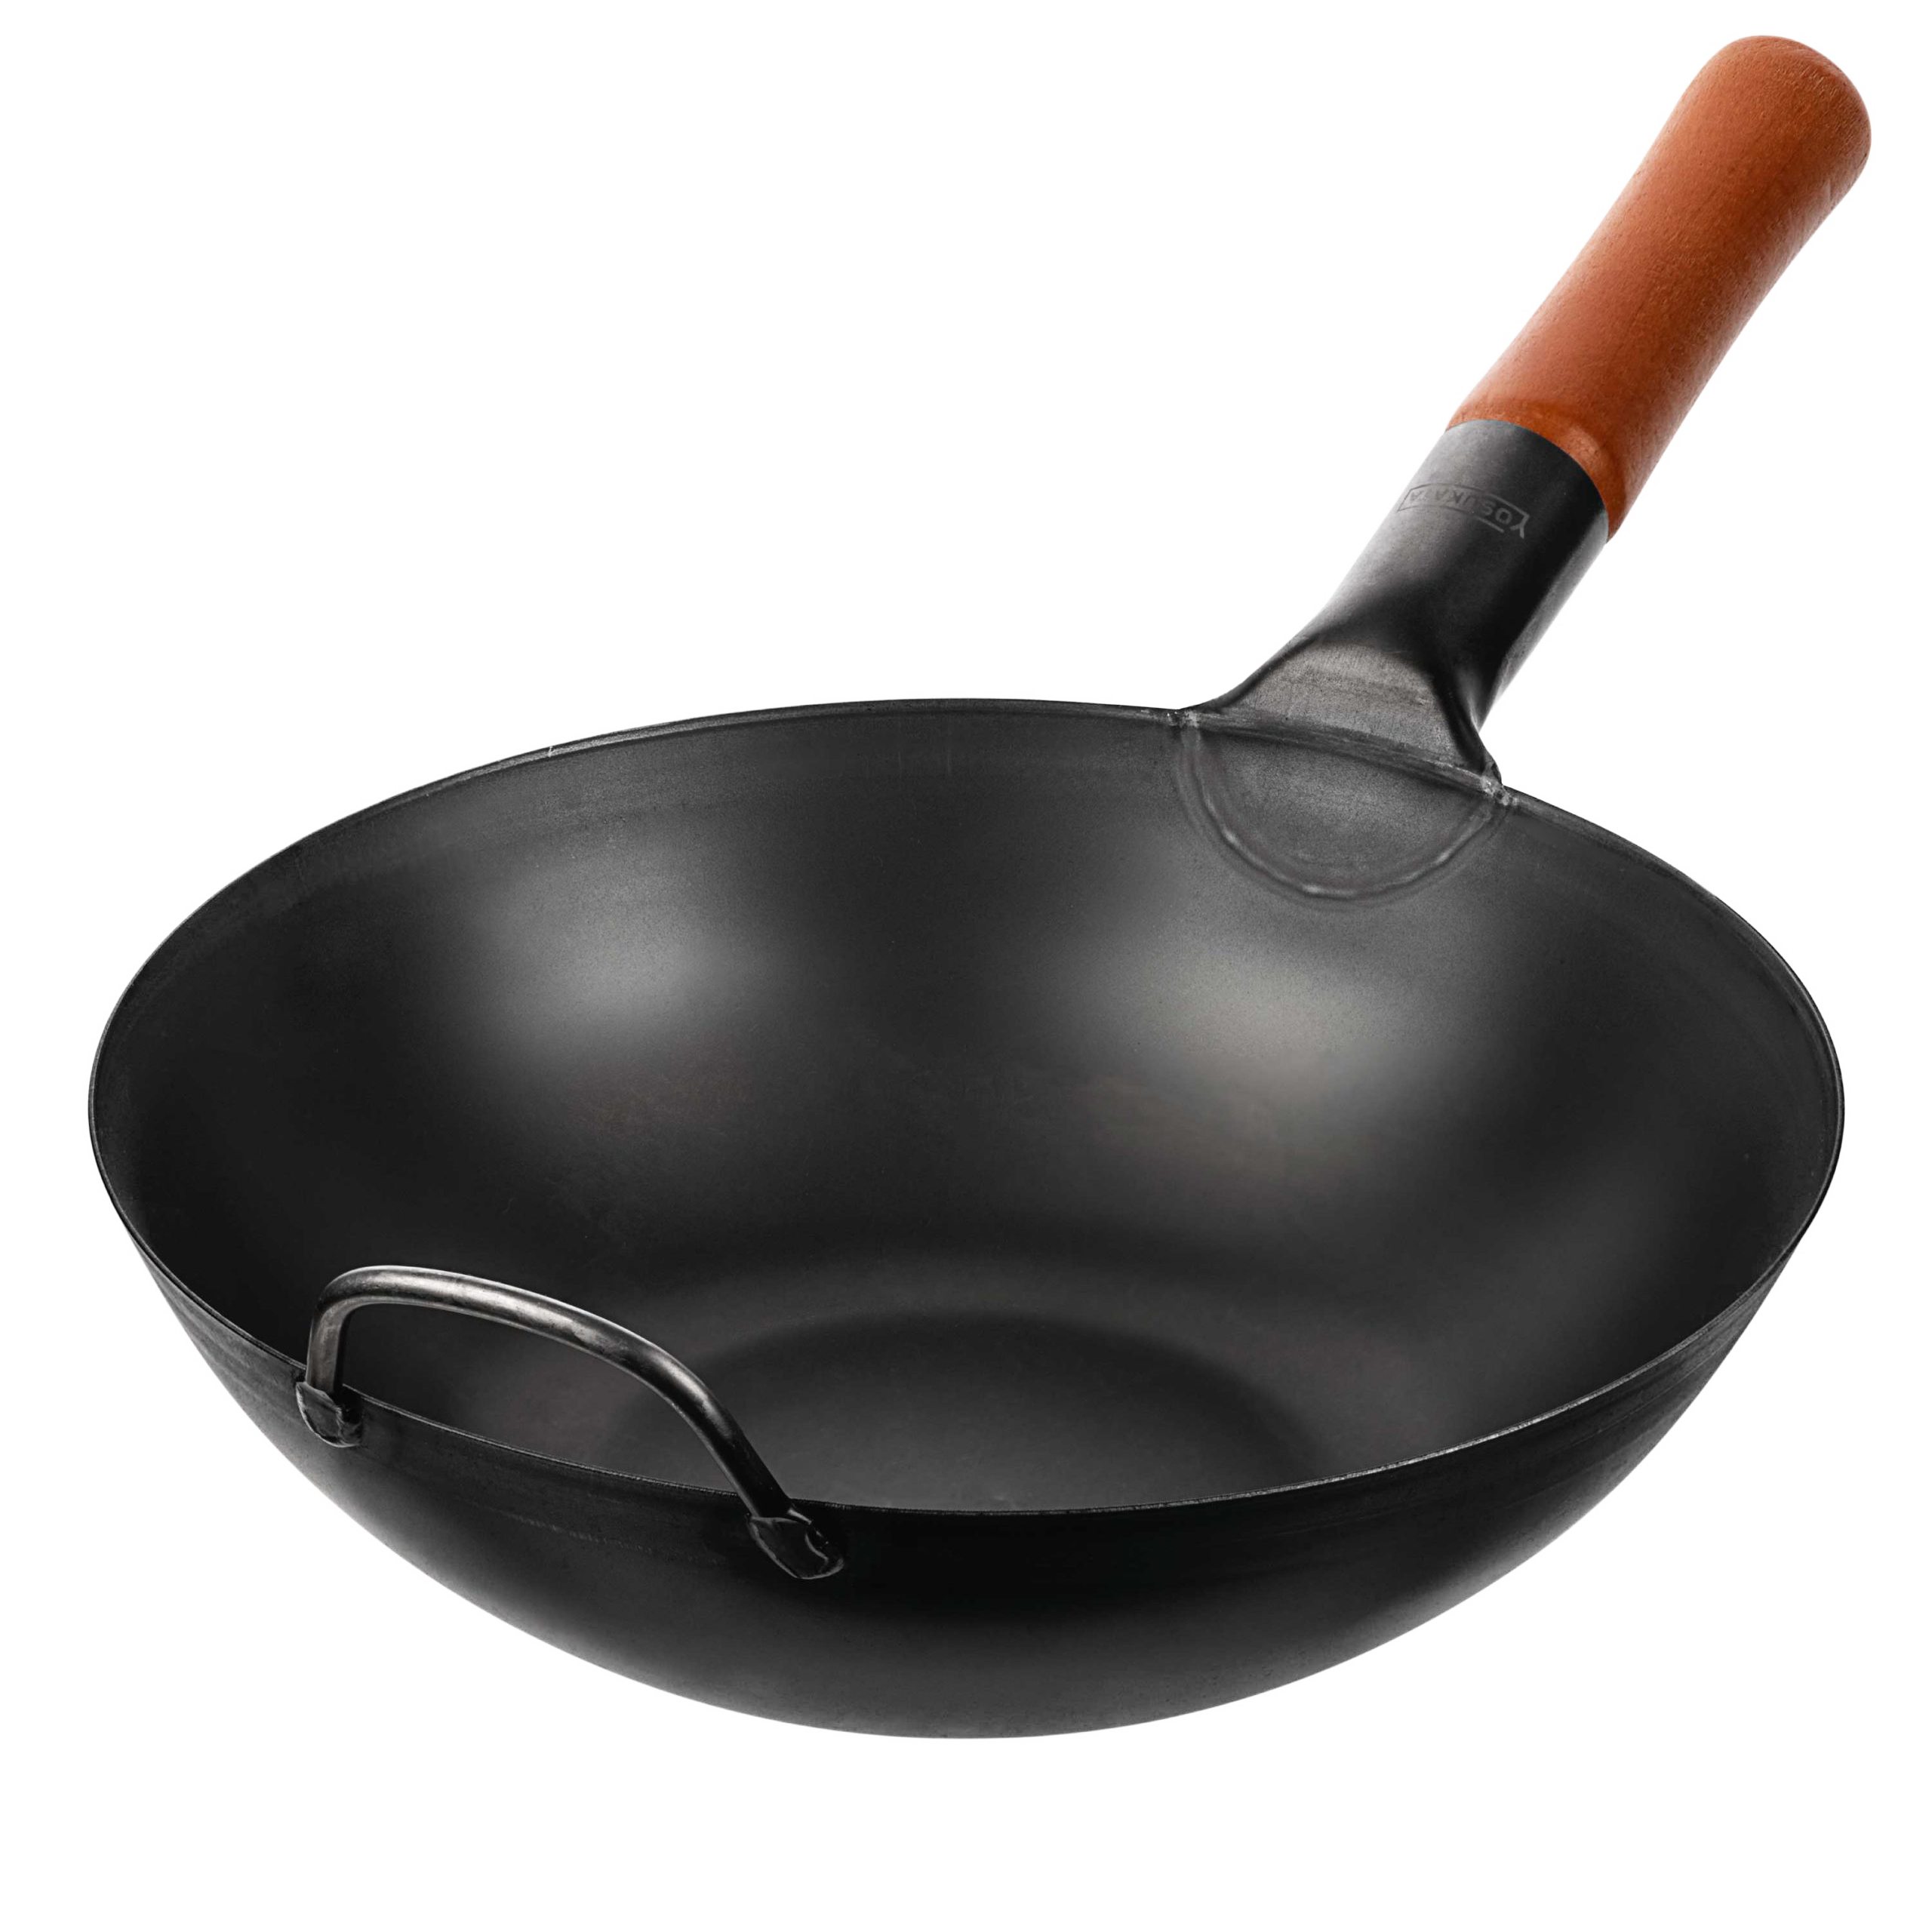  WRMIGN Sartén/wok de acero inoxidable, con asa